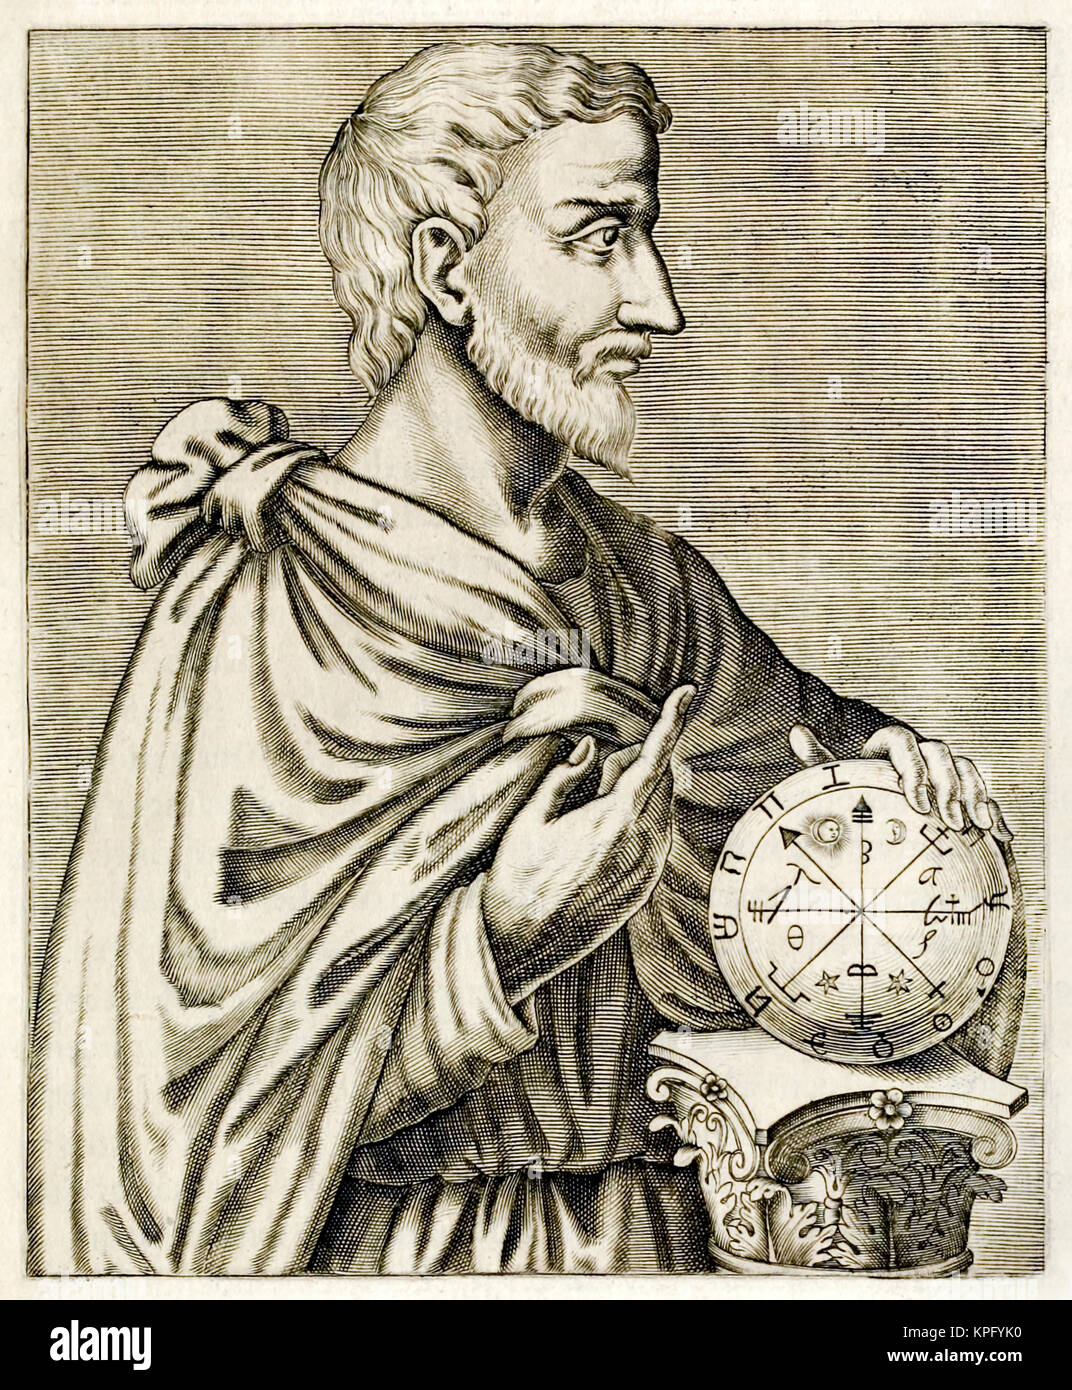 Pitagora di Samo (570-495BC) Ionian filosofo greco, matematico e fondatore del movimento religioso chiamato Pythagoreanism. Incisione da "Vero ritratti…" da André Thévet (1516-1590), pubblicato nel 1584. Vedere la descrizione per maggiori informazioni. Foto Stock